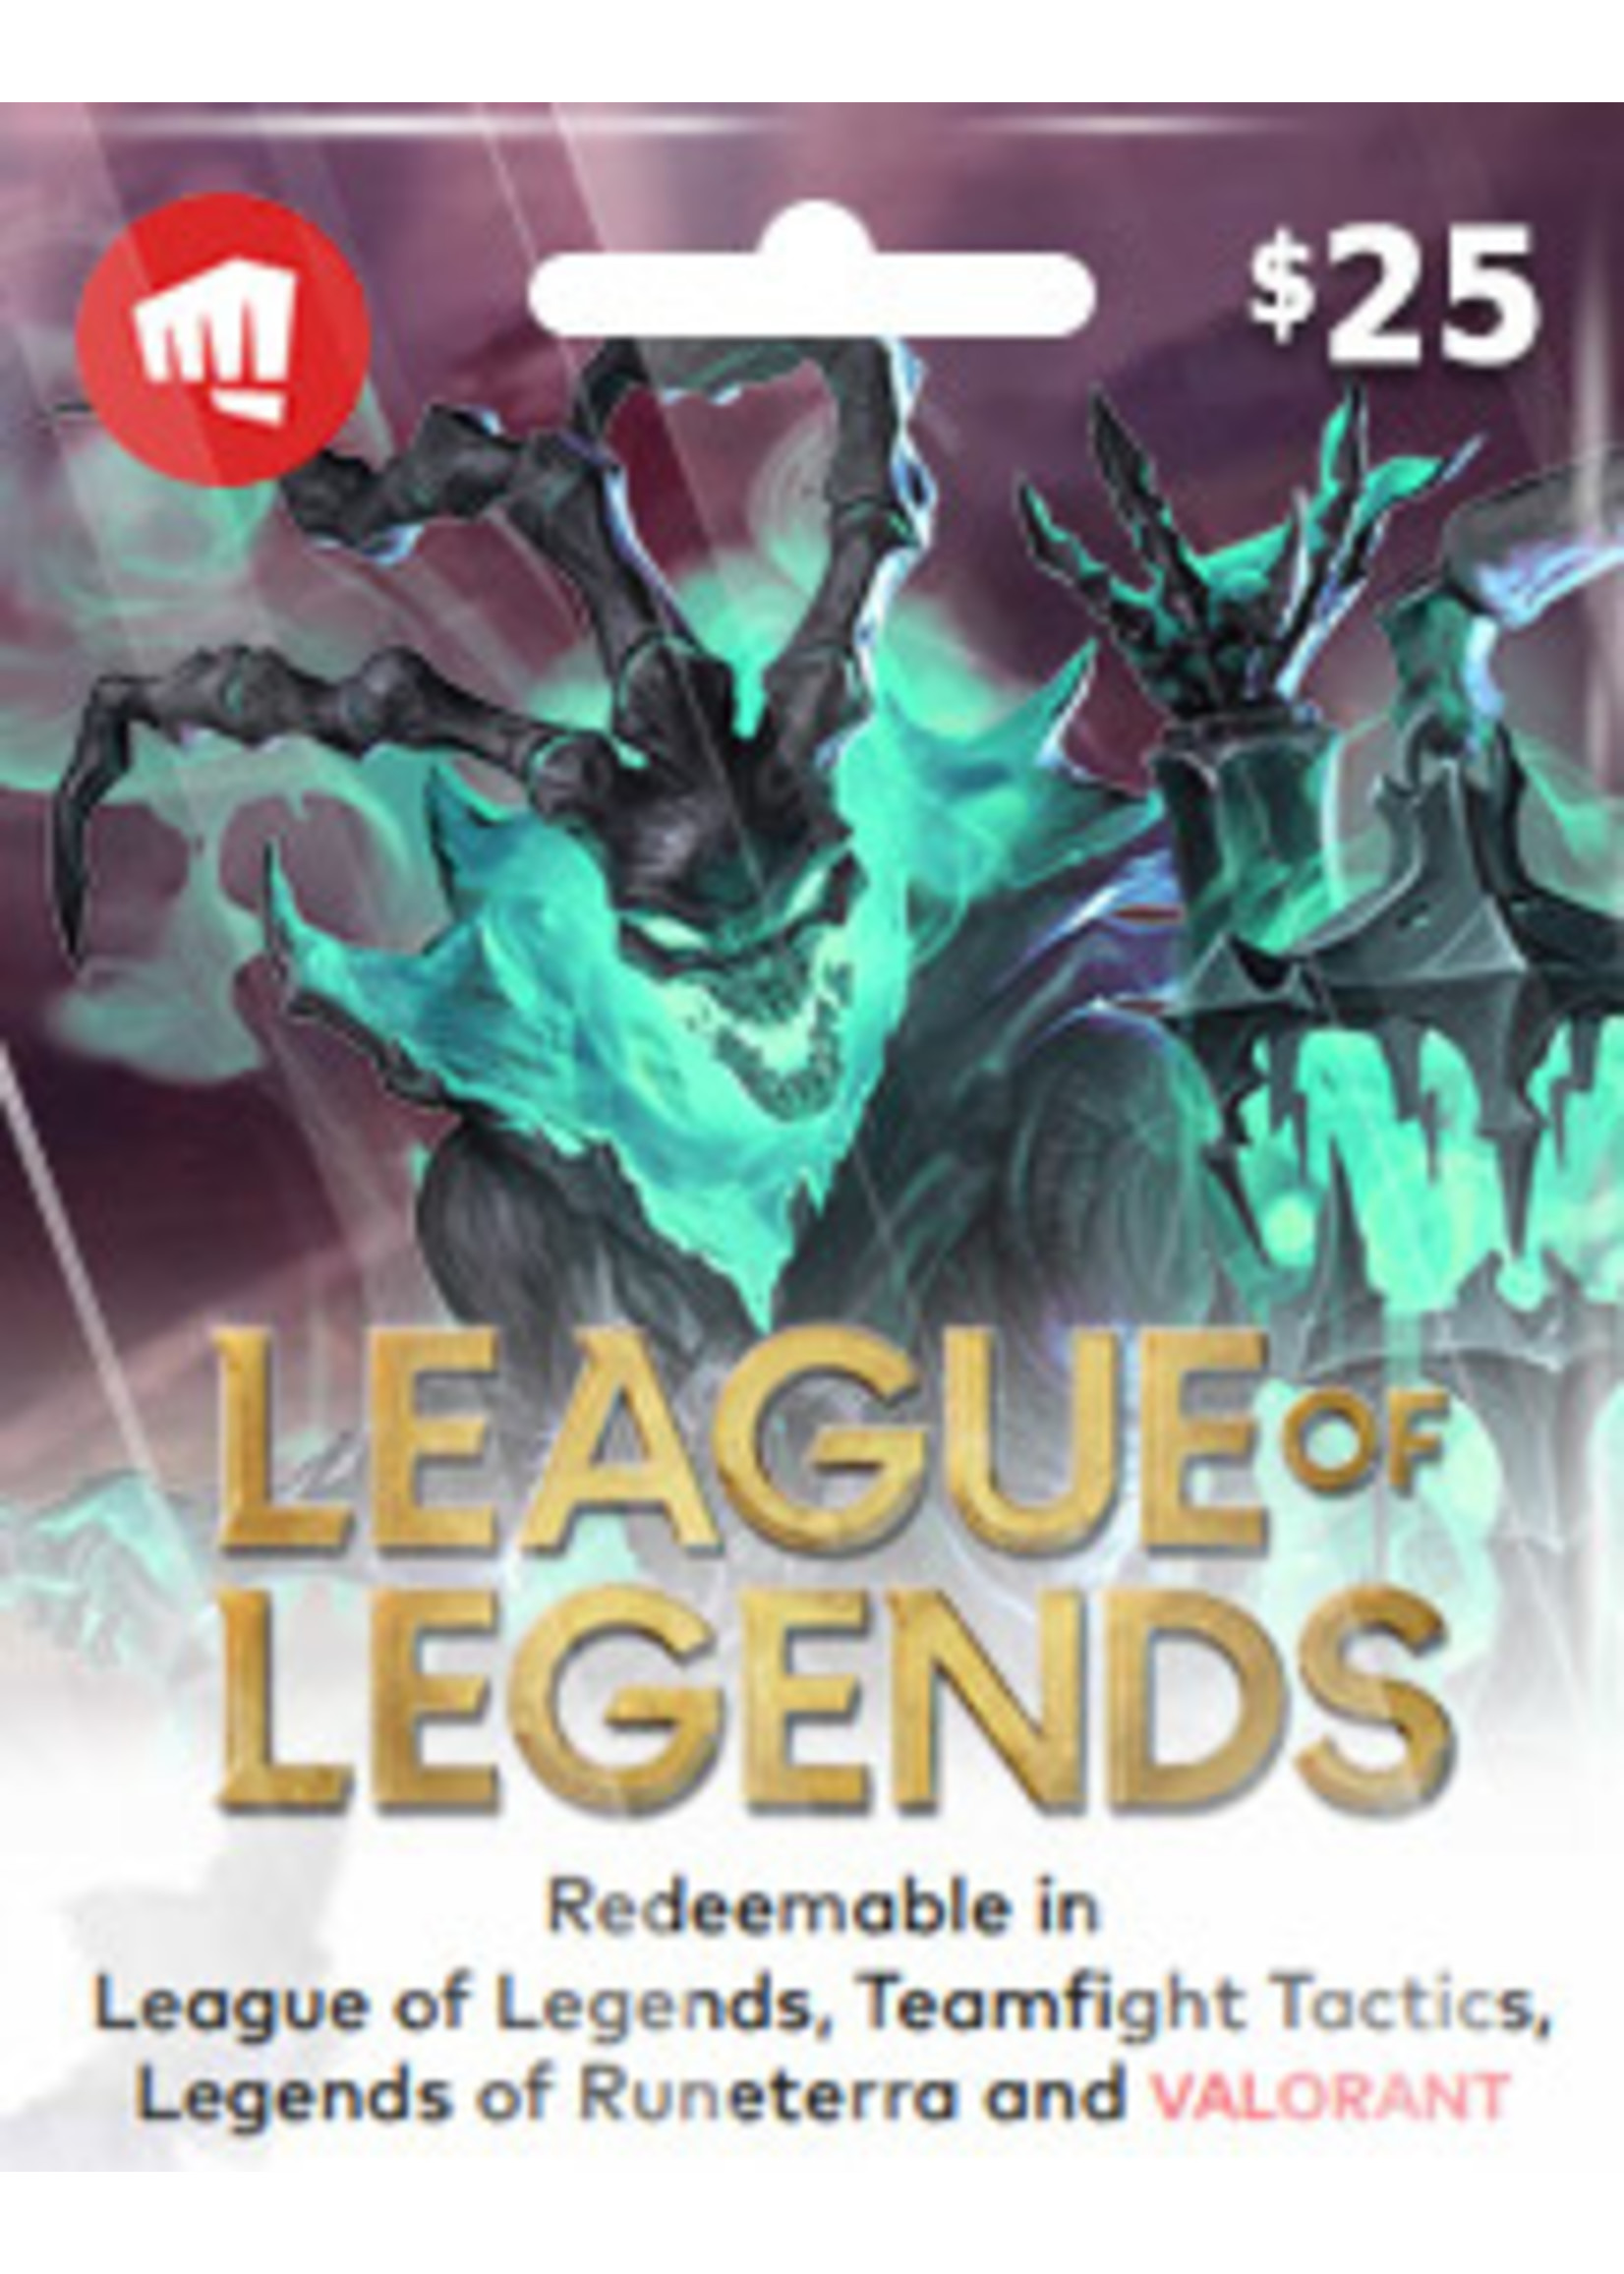 League of Legends $25